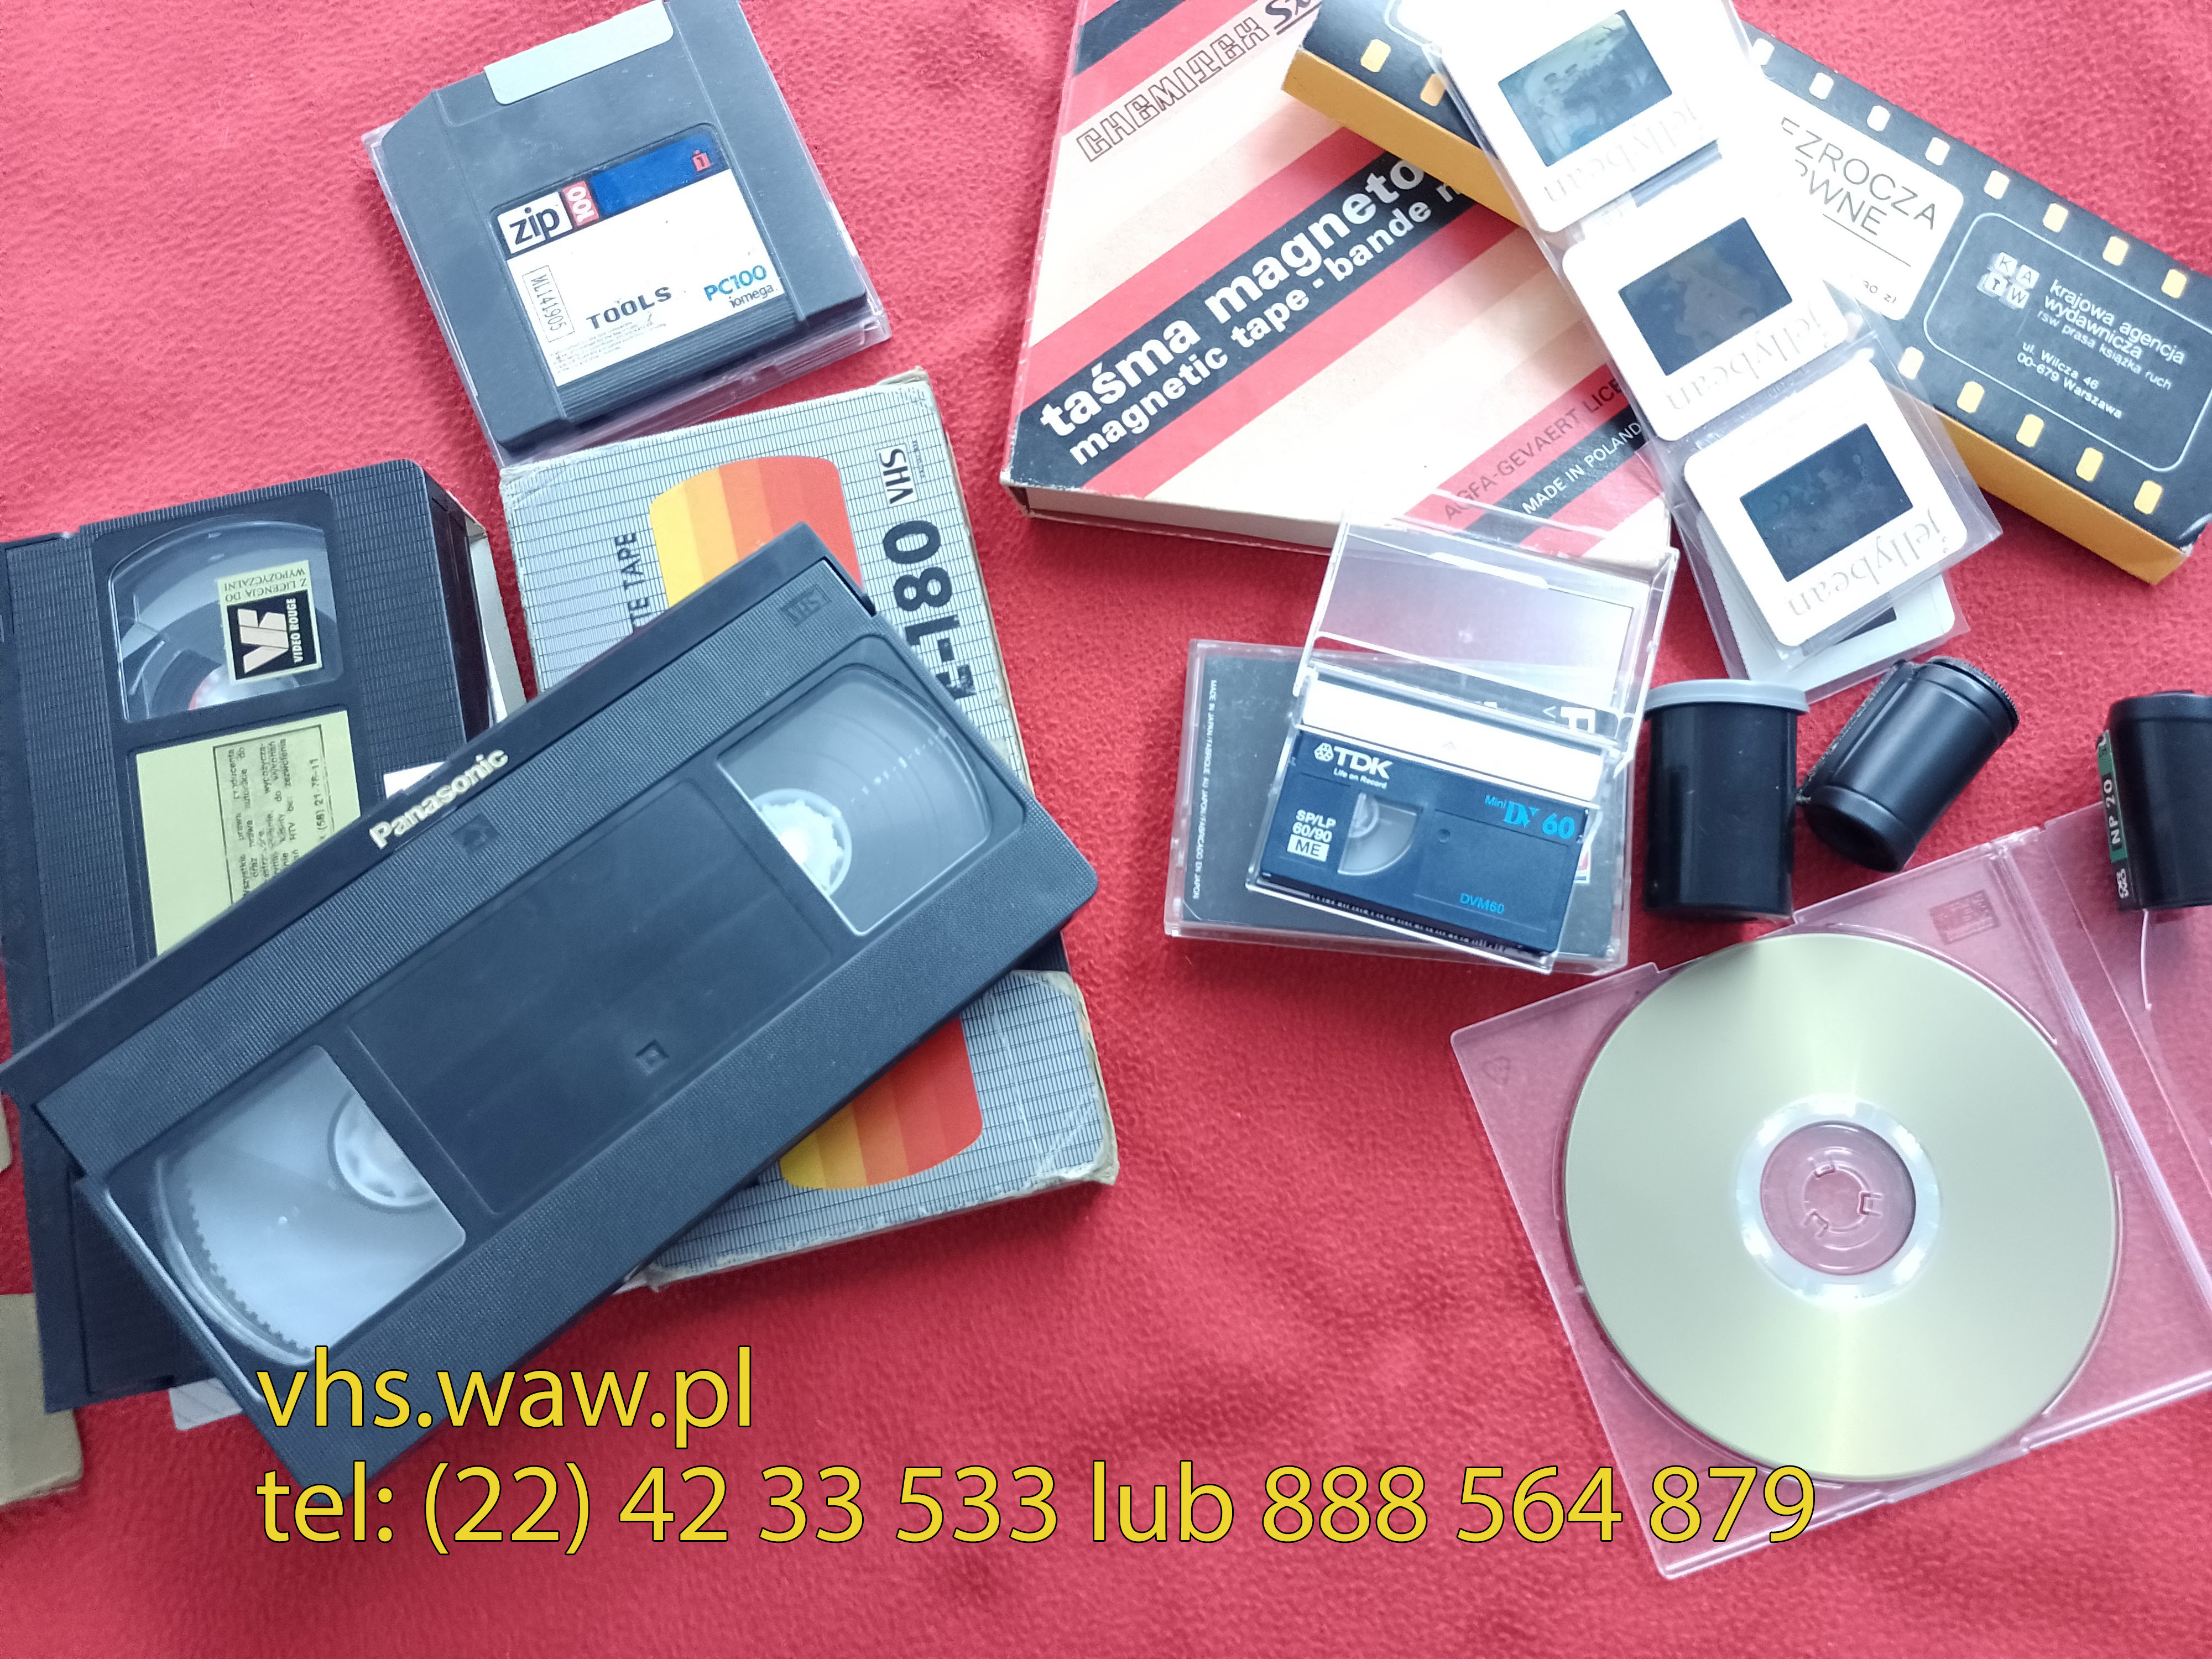 Przegrywanie kaset wideo, audio, płyt CD/DVD, rewitalizacja fotografii